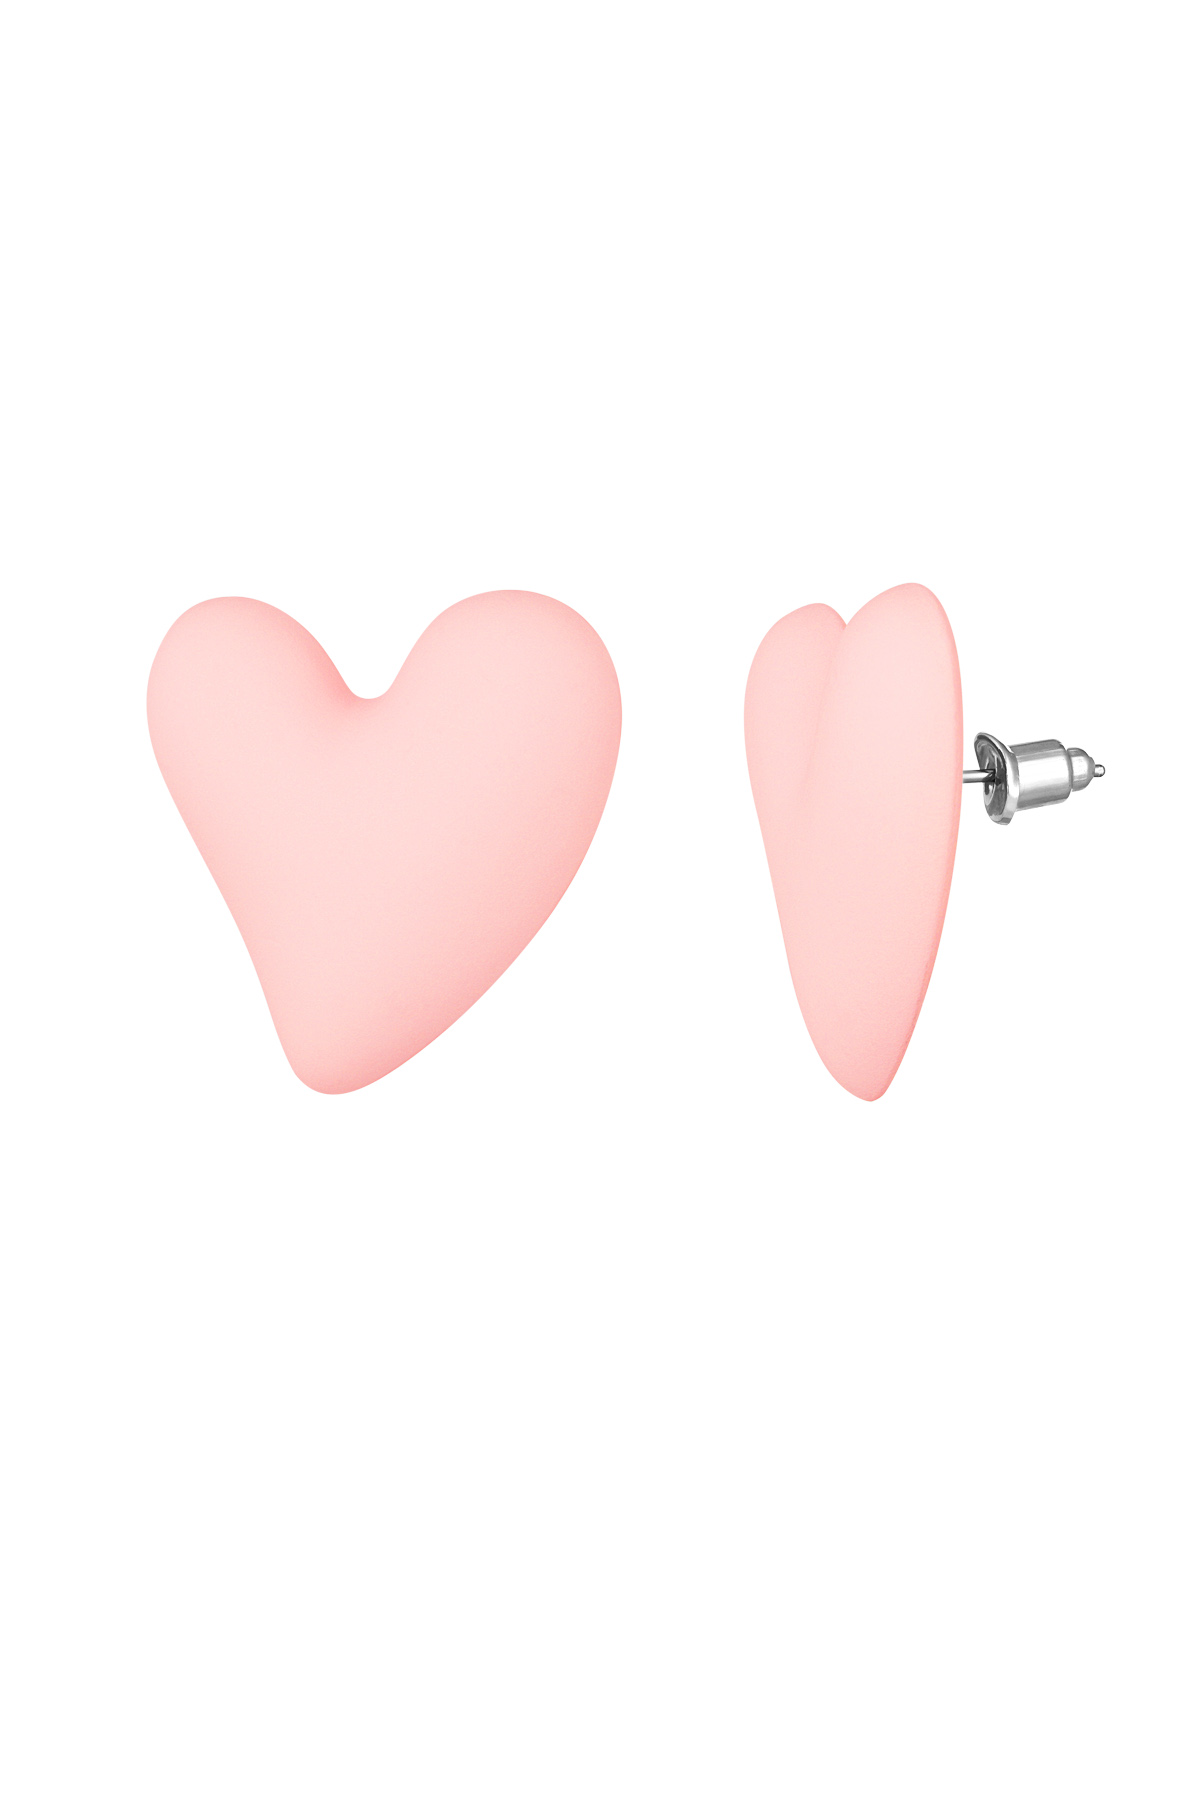 Boucles d'oreilles love colorées - rose pâle  h5 